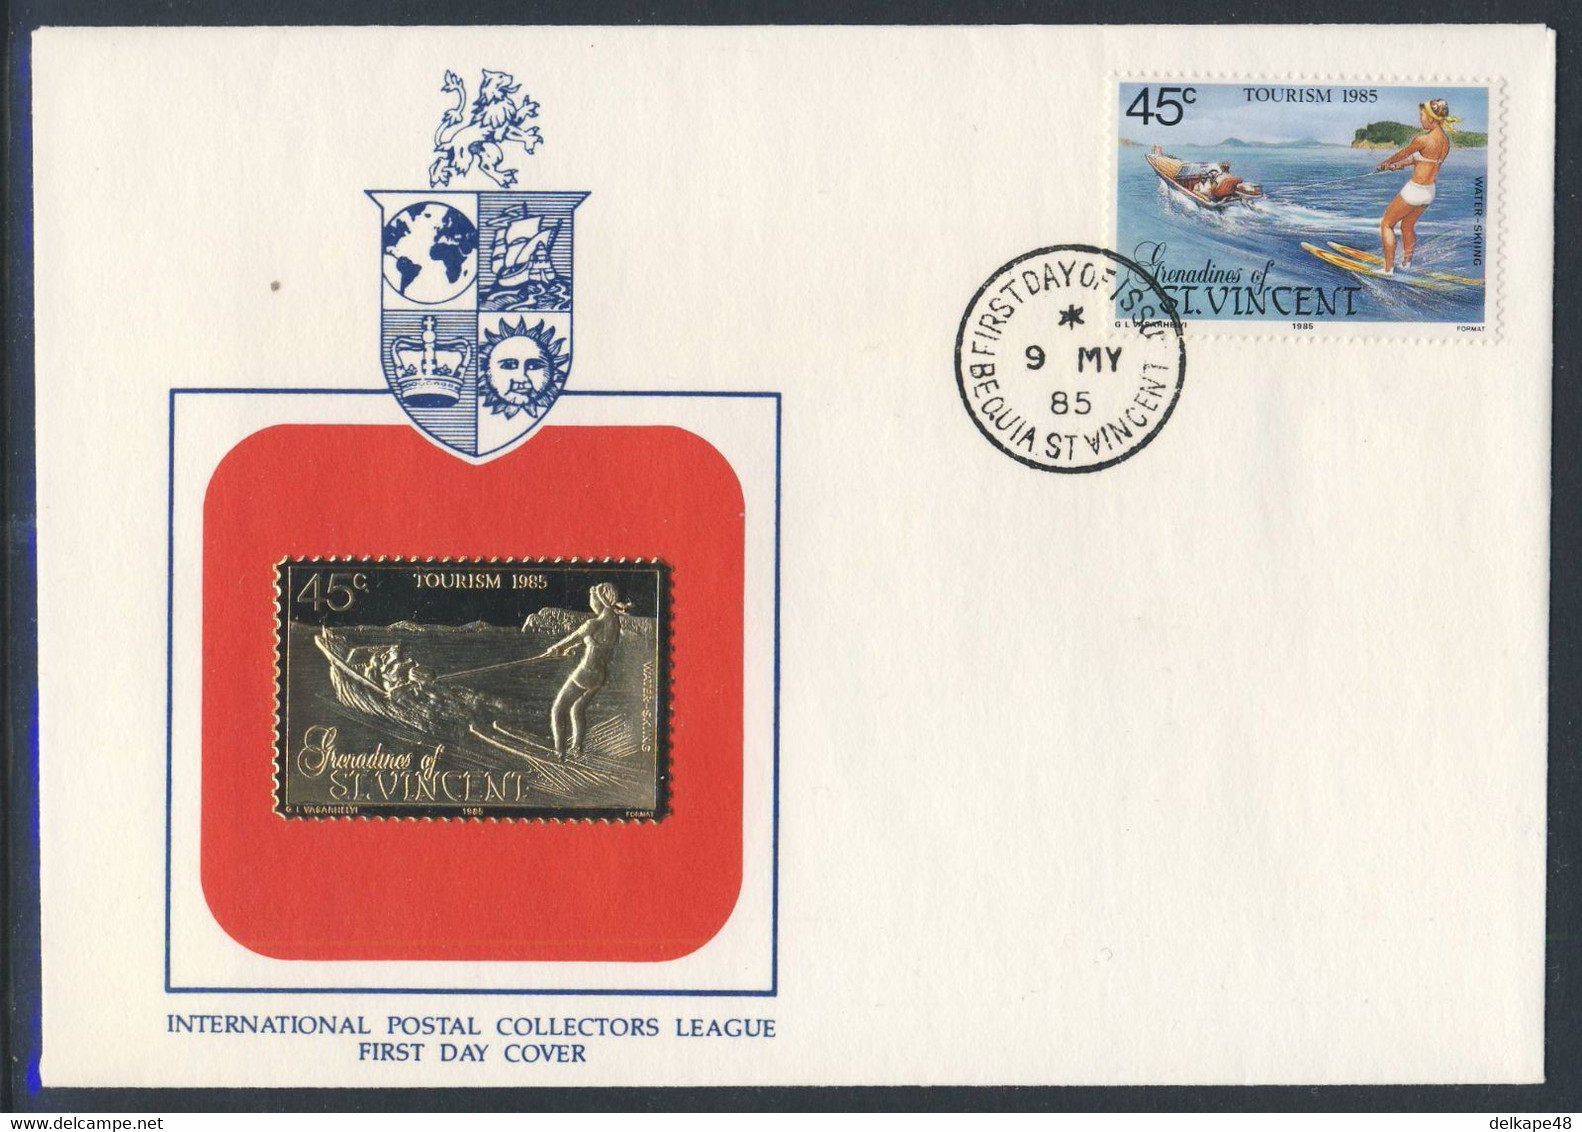 Grenadines Of St. Vincent 1985 FDC Mi 398 SG 387 - Golden Stamp - Water-skiing / Wasserskifahren / - Ski Náutico